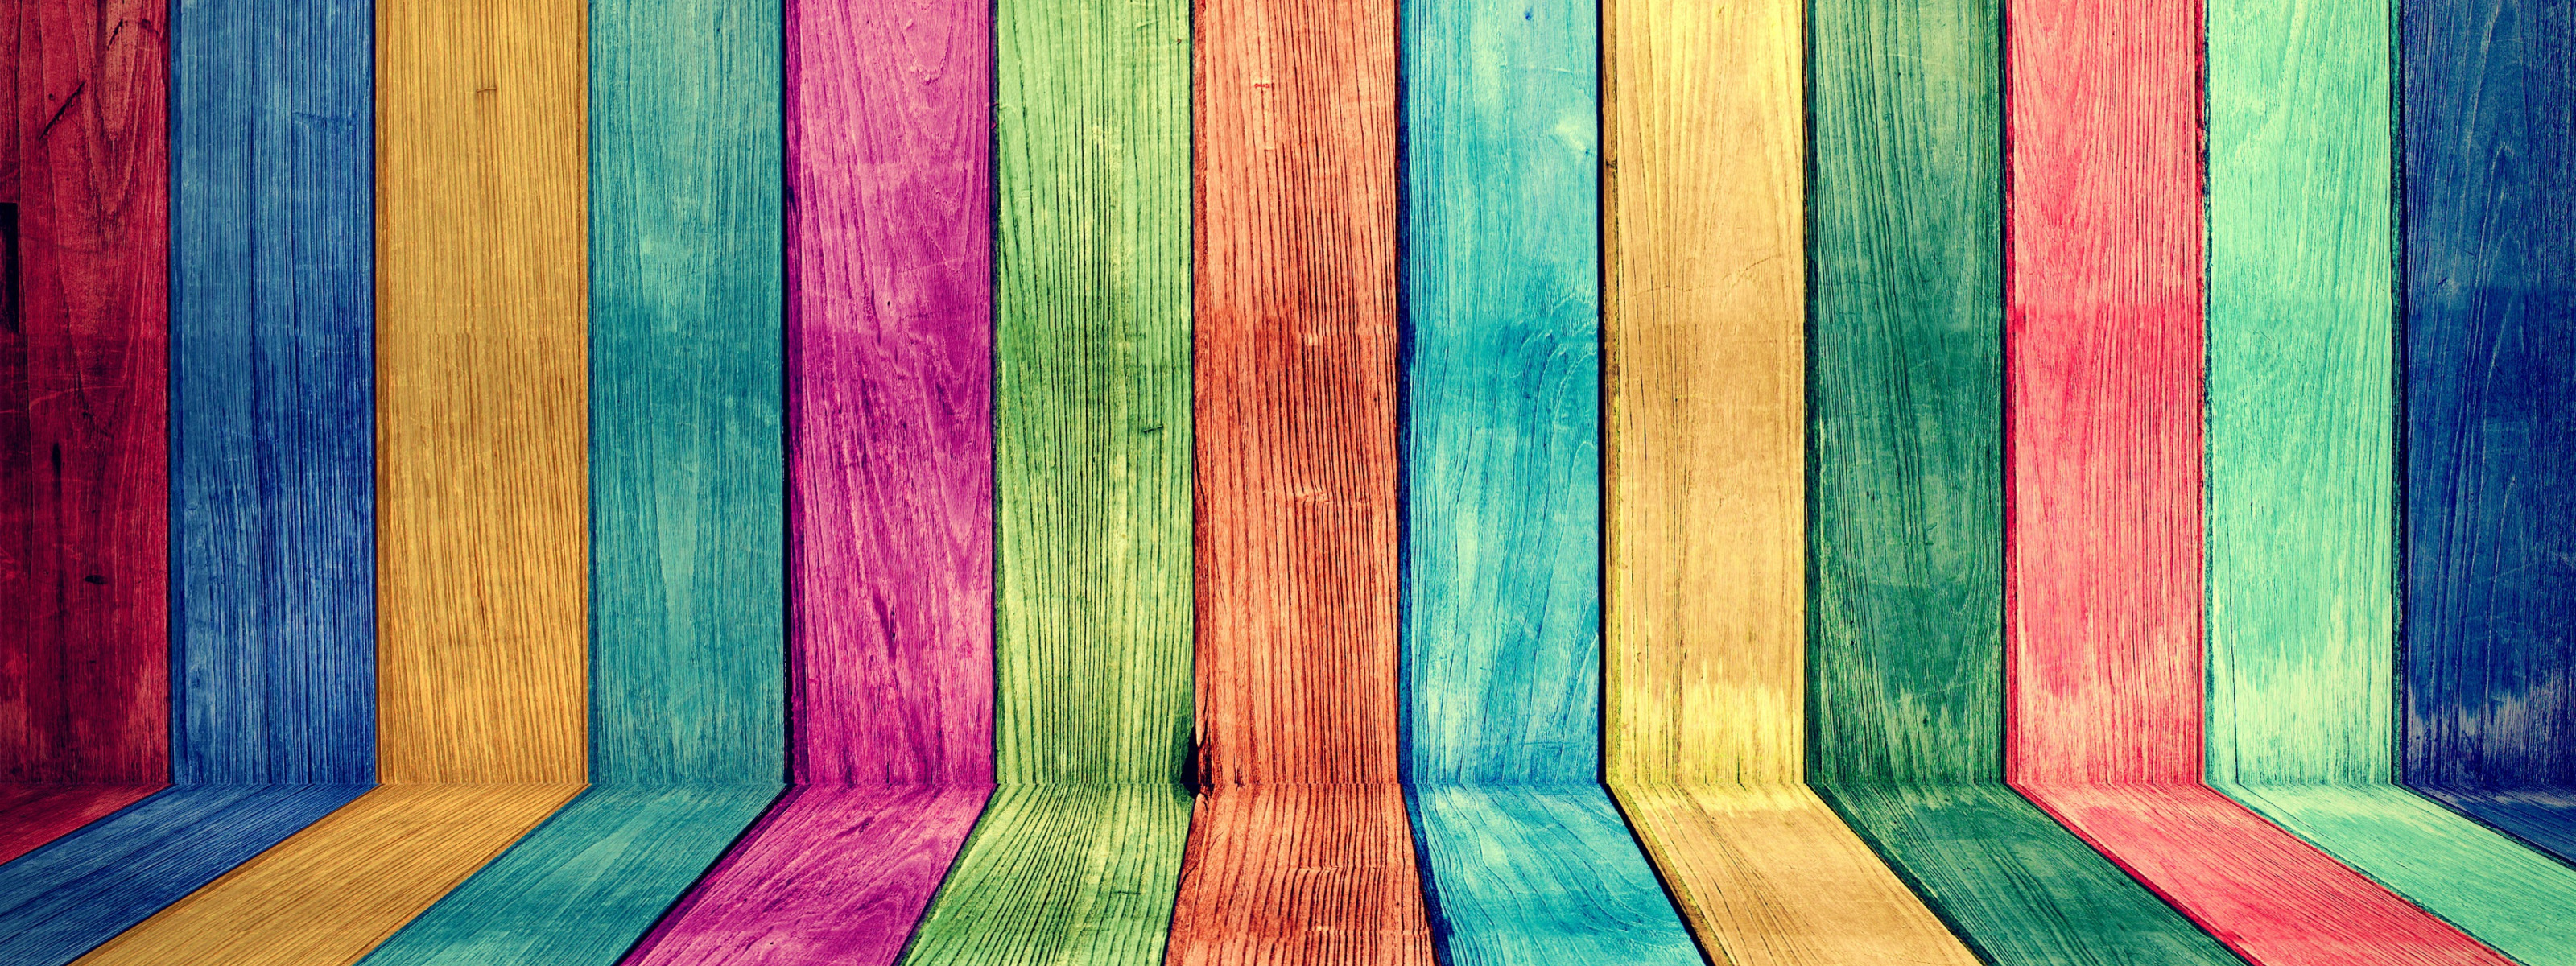 Разноцветные доски. Цветные дощечки. Разноцветные доски текстура. Яркие краски по дереву.